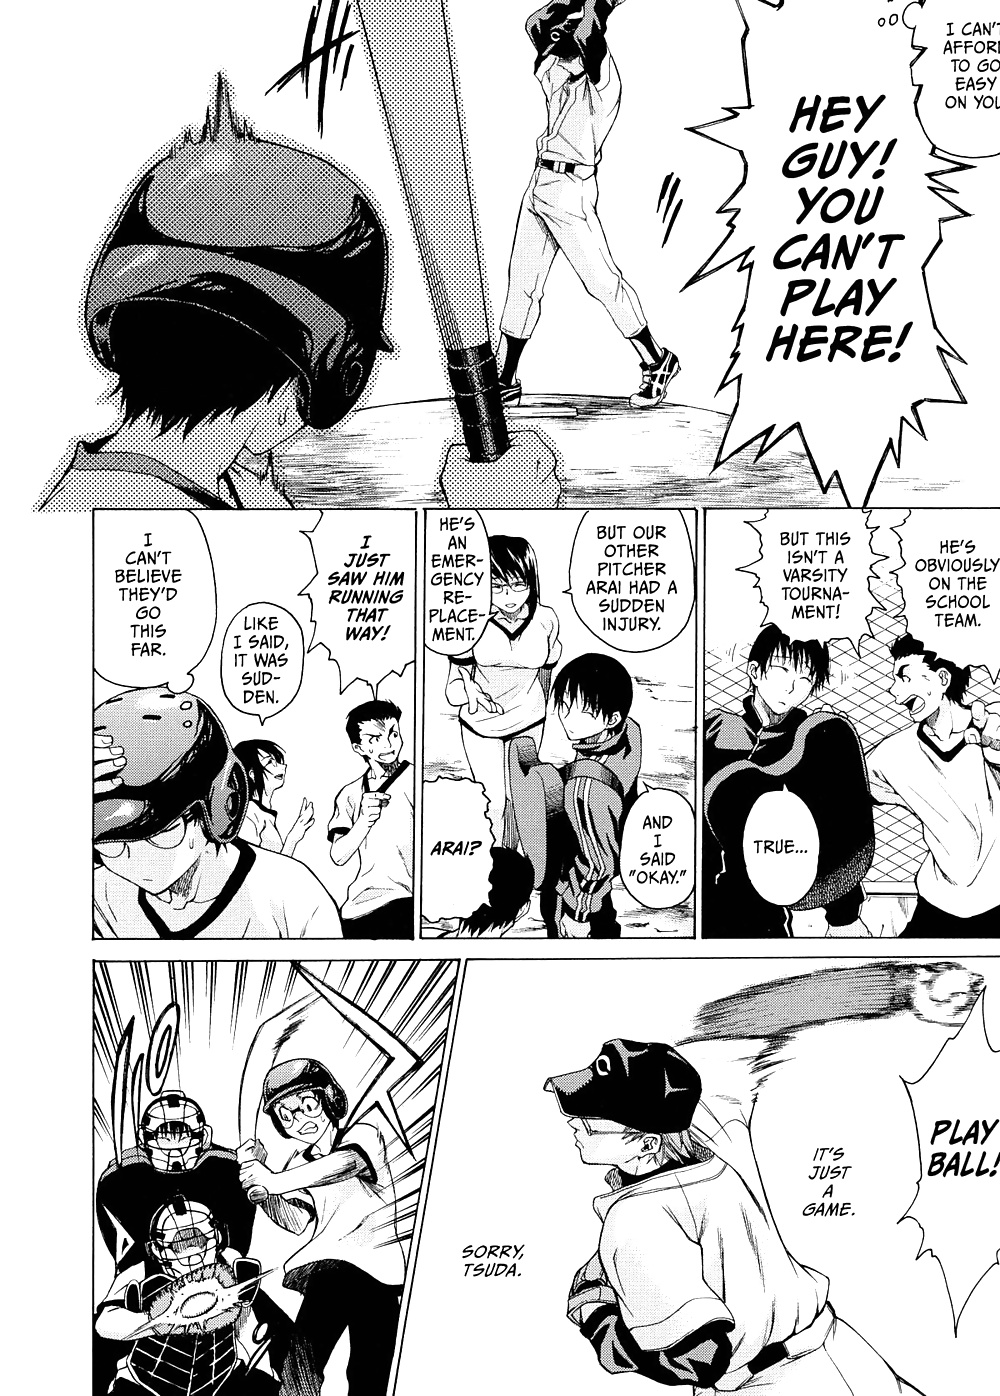 Domin-8 Me ( Take On me ) Hentai Manga Part 2 (42/98)